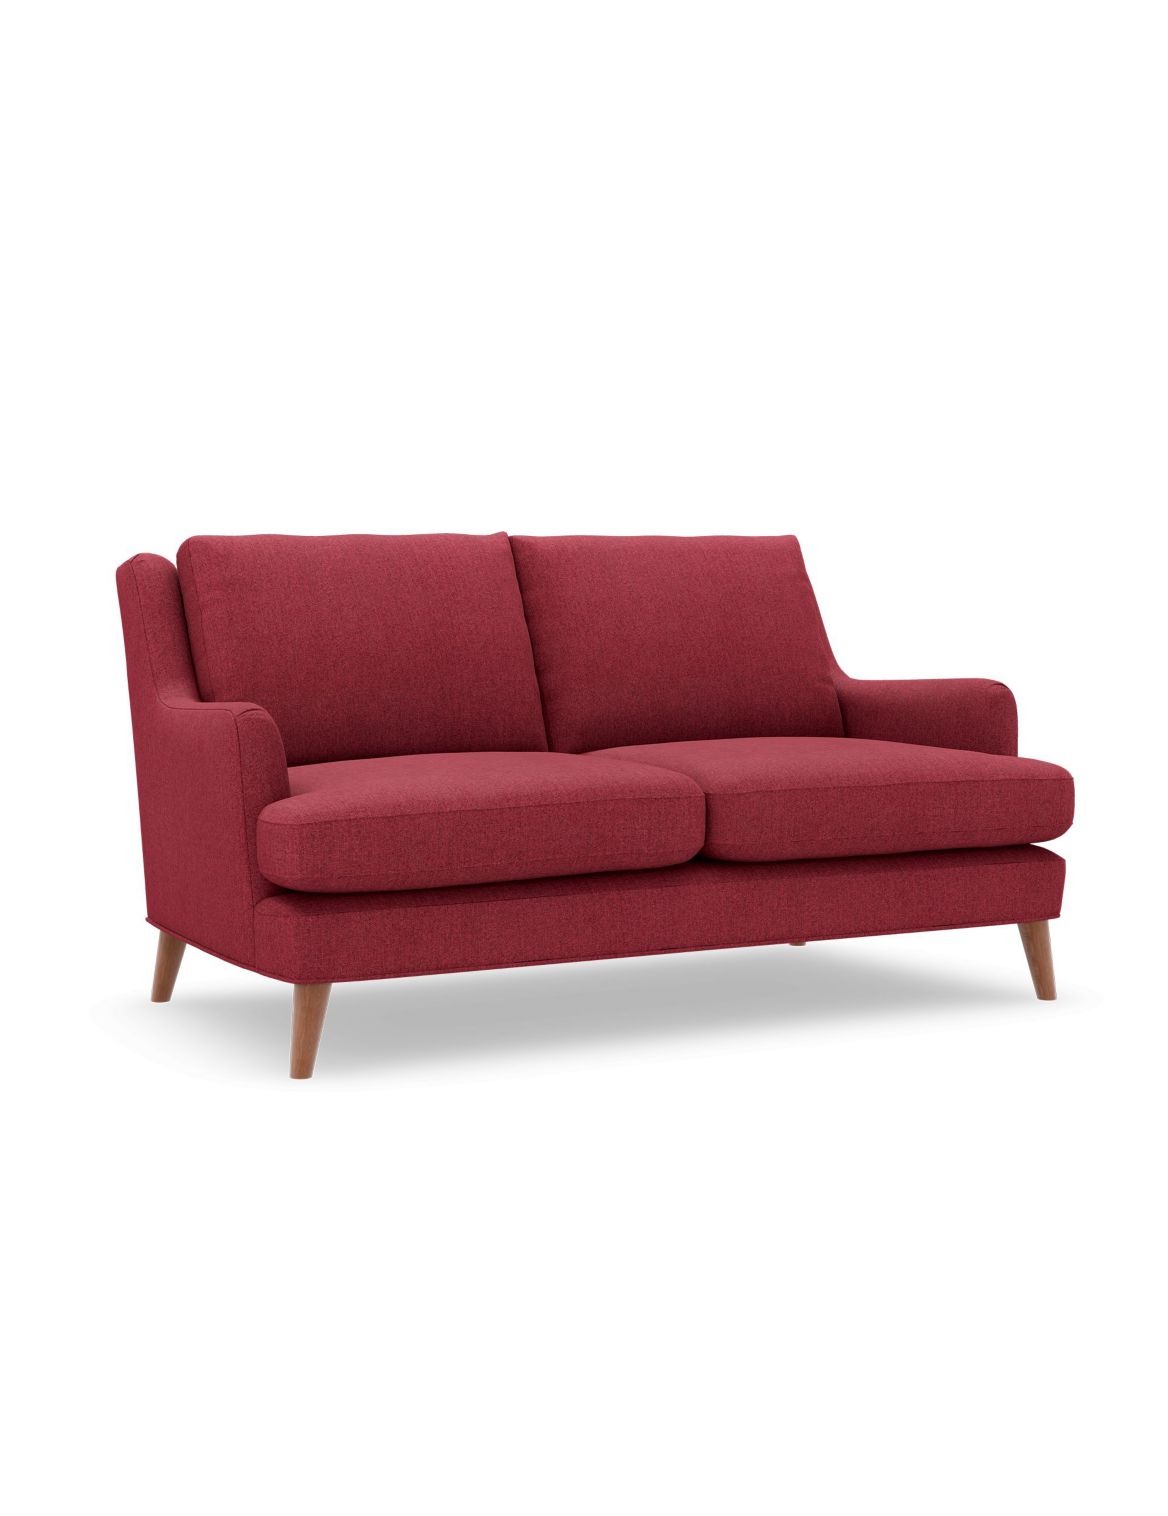 Ashton Small Sofa red